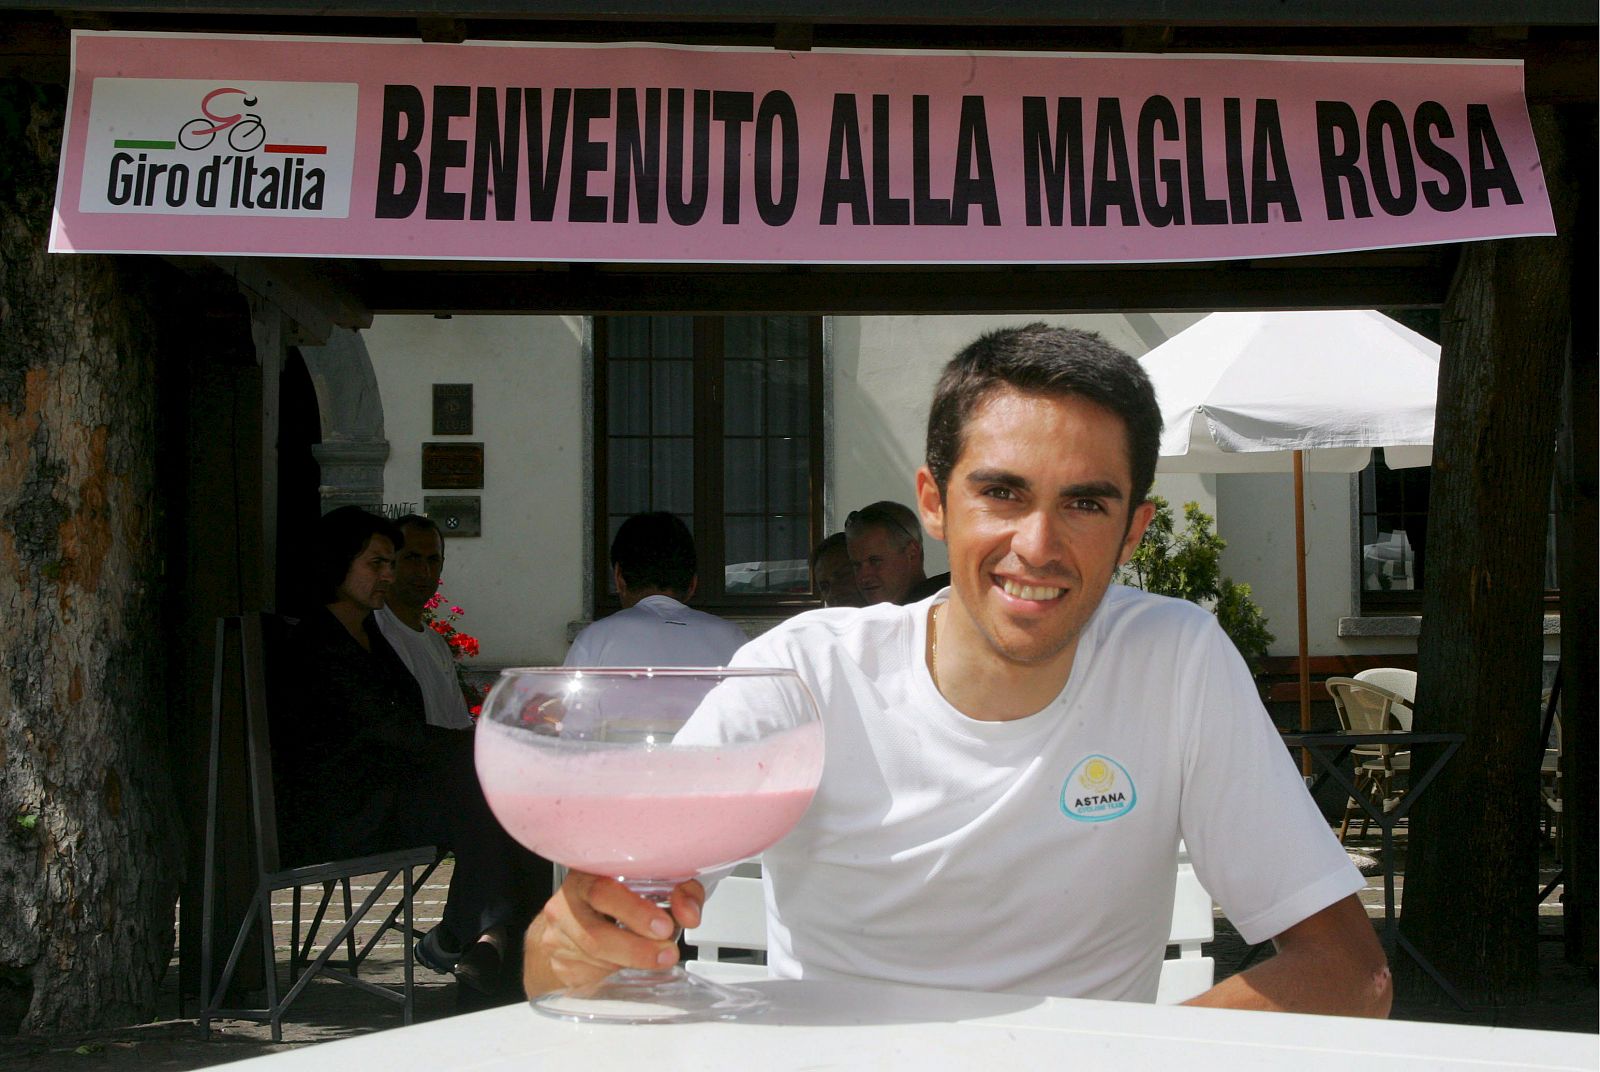 La 2 retransmitirá las últimas etapas del Giro, que podrían consagrar a un ganador español 15 años después.